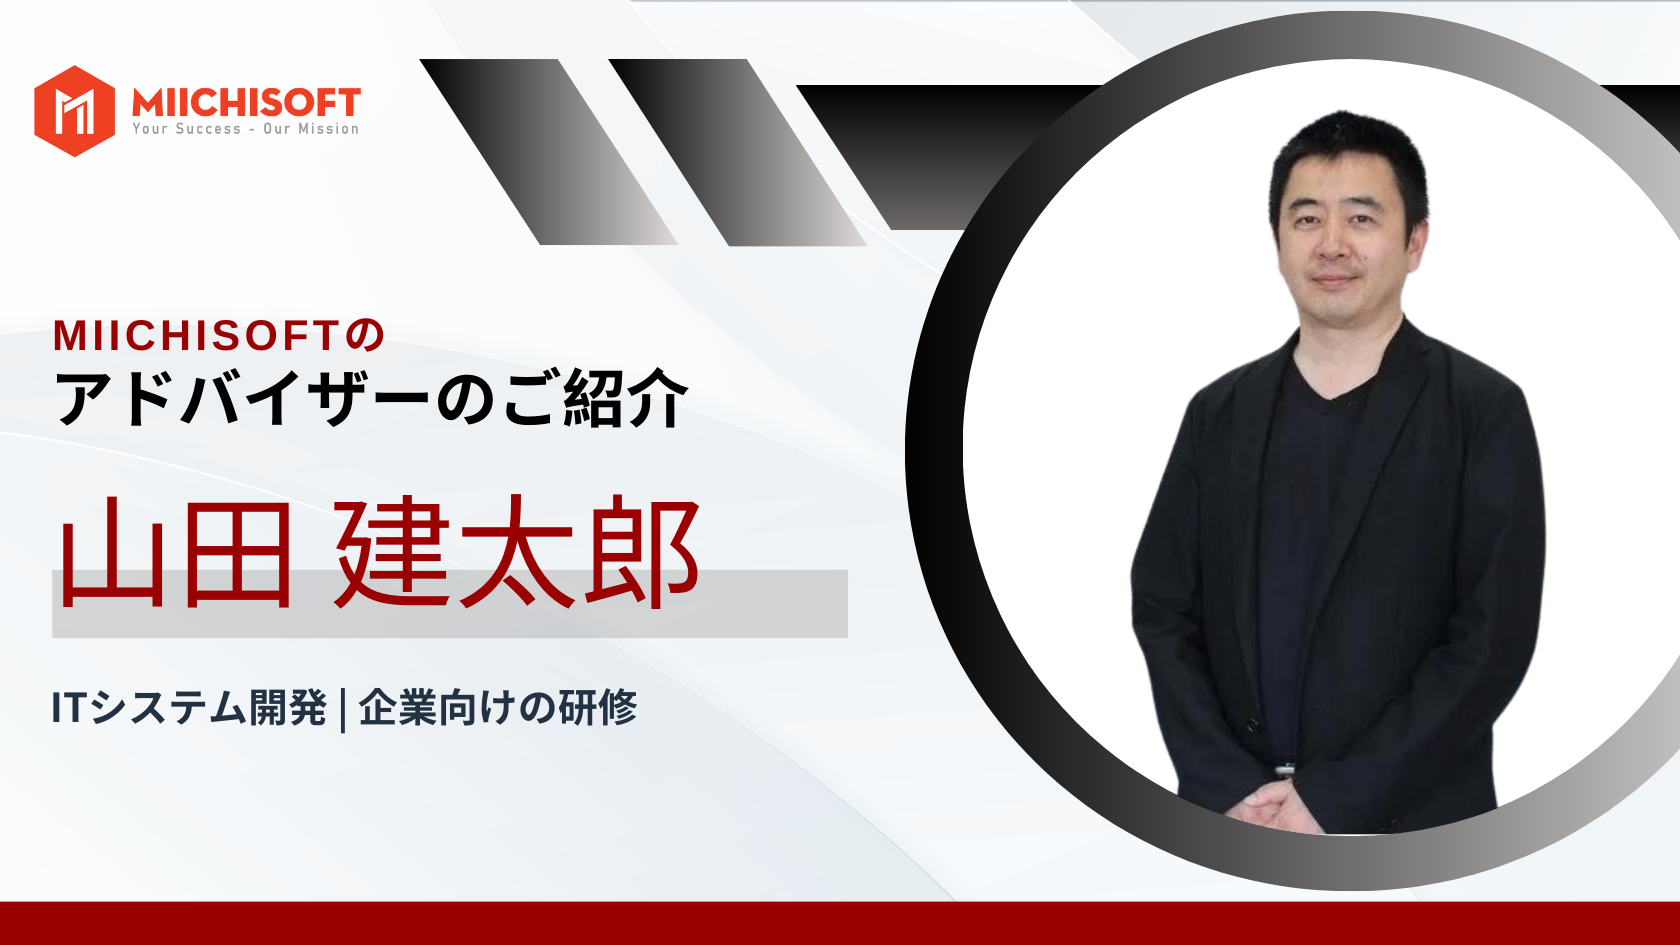 アドバイザー紹介: | デジタルトランスフォーメーションの専門家、山田建太郎氏がMiichisoftに参加されます!